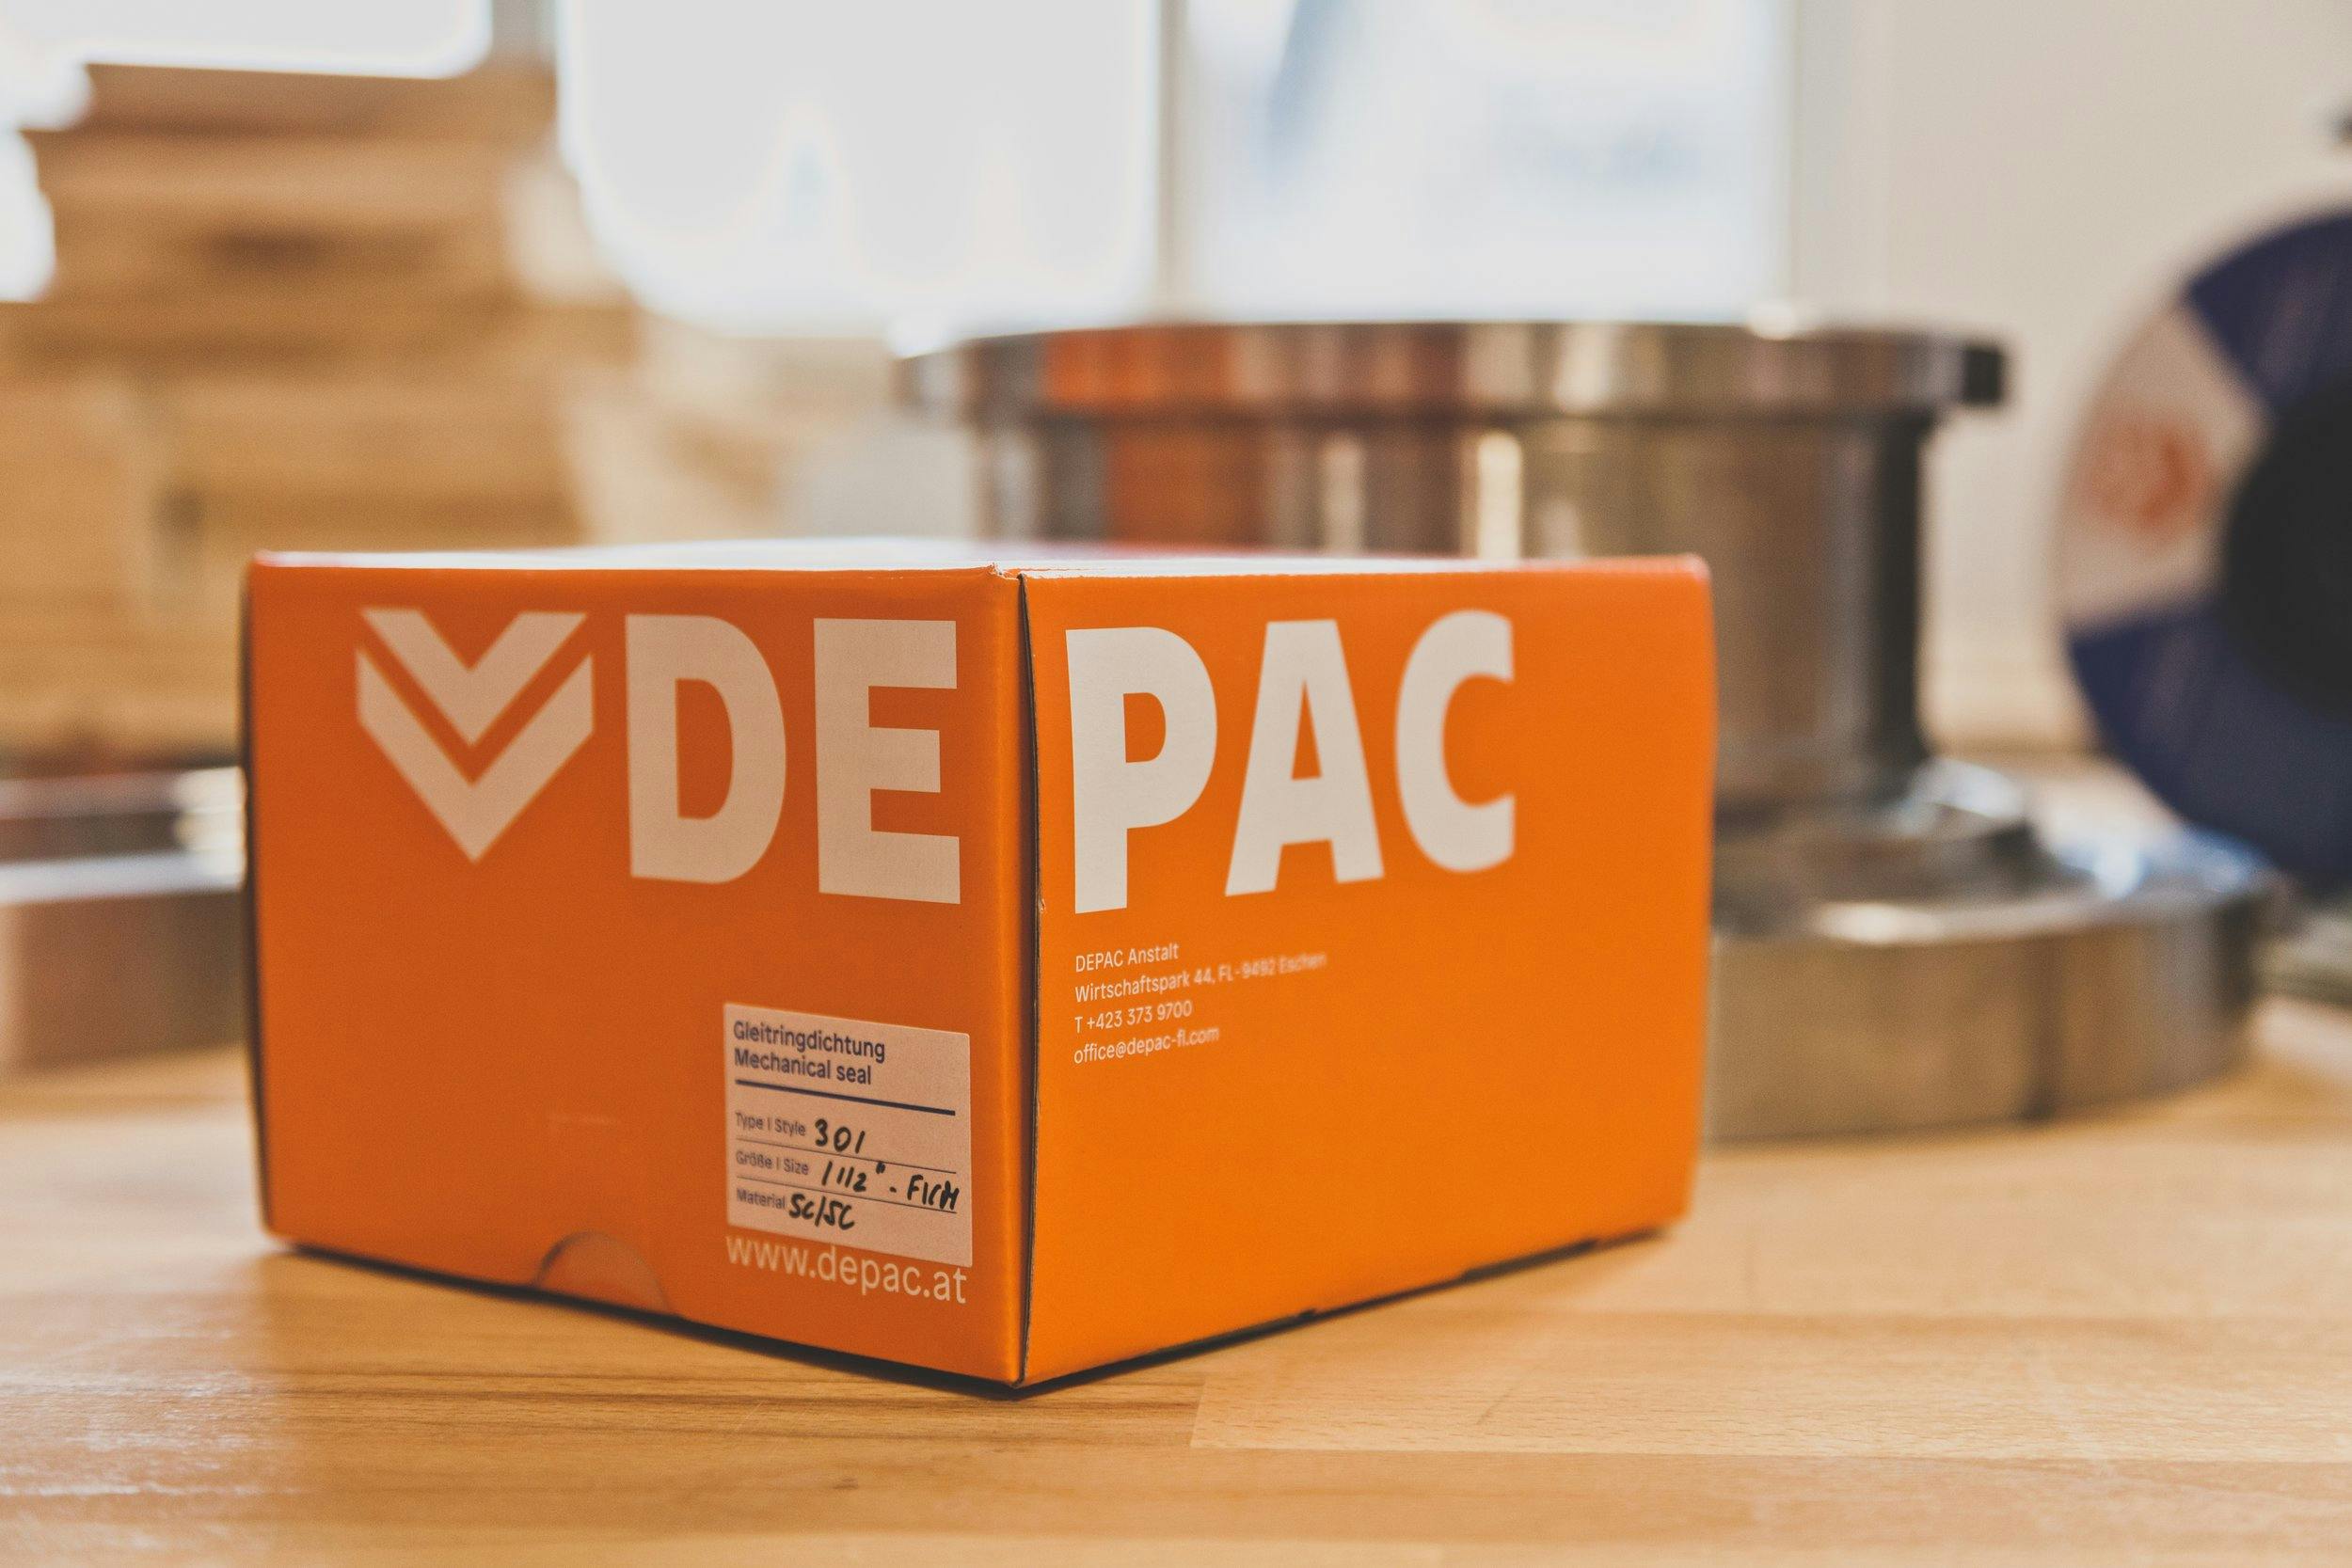 DEPAC-Branding_Verpackung © Patricia Keckeis